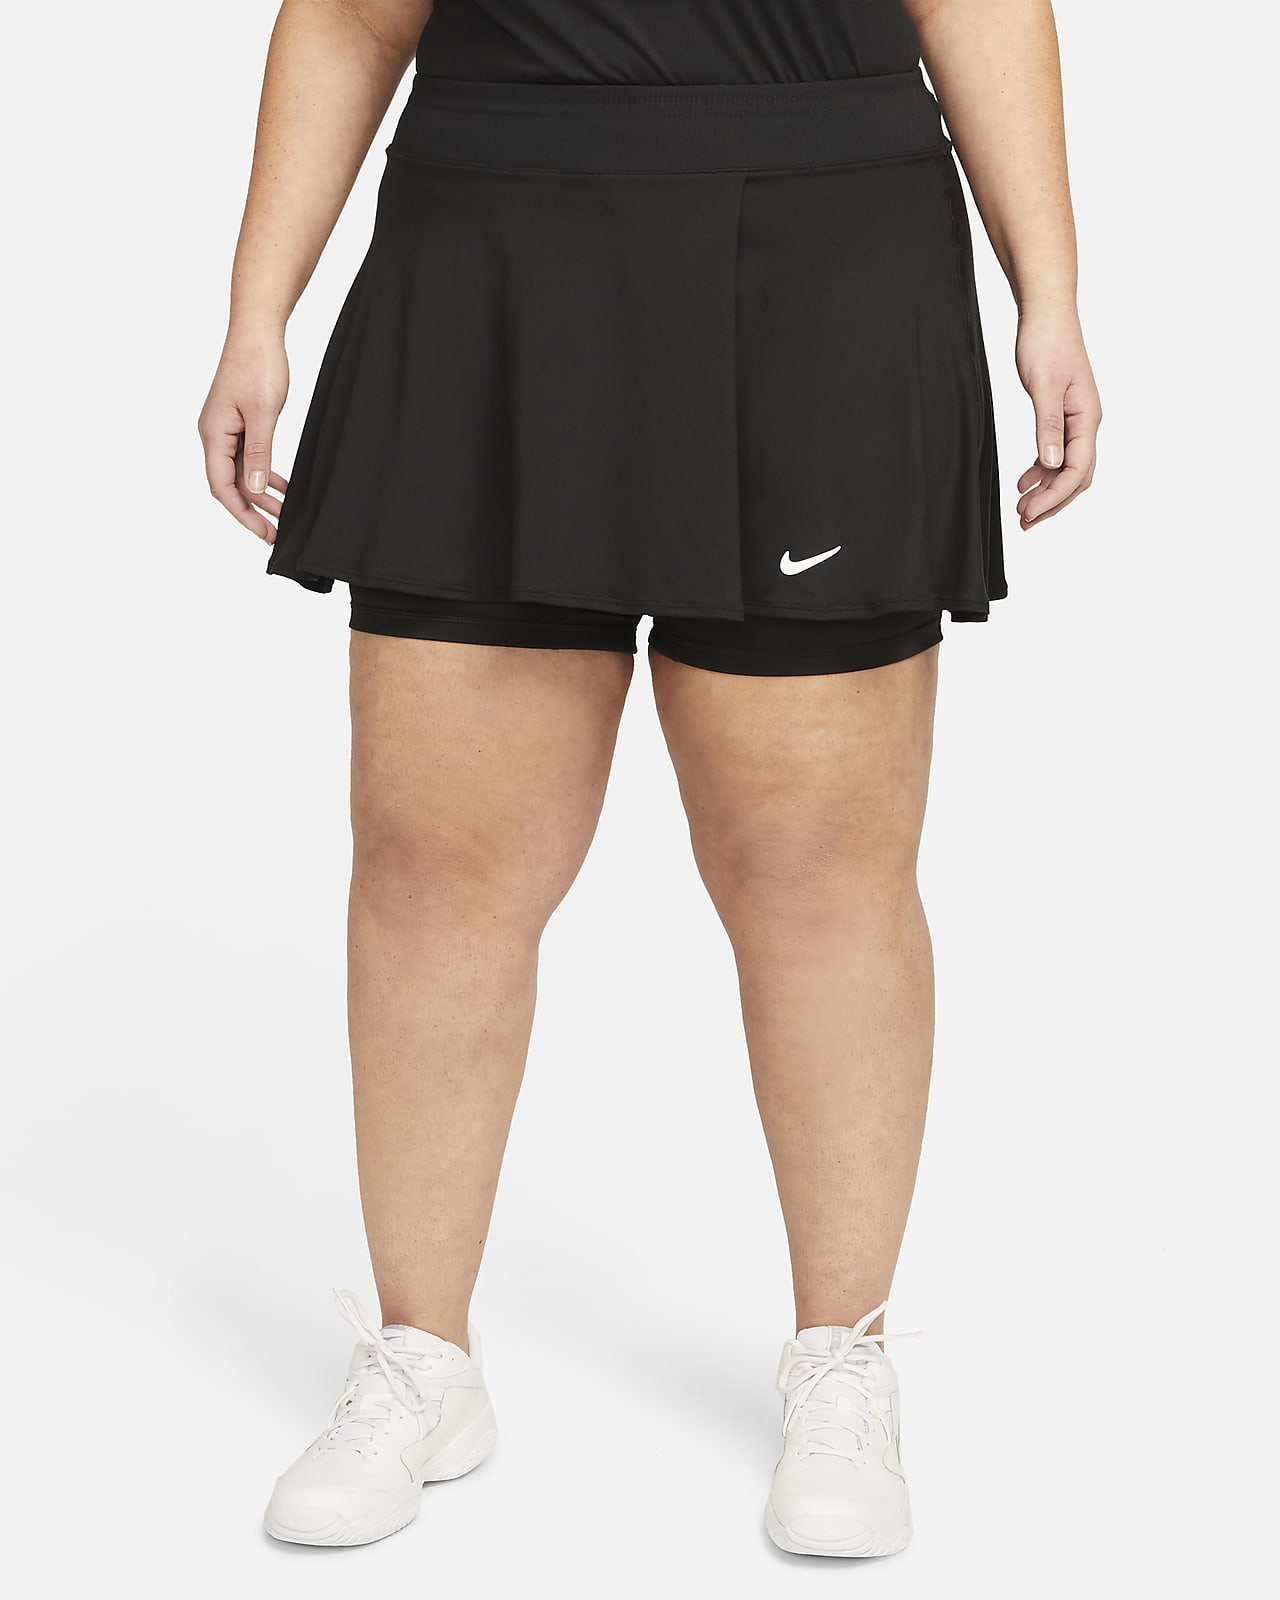 NikeCourt Dri-FIT Victory gerüschter Tennisrock für Damen (große Größe)